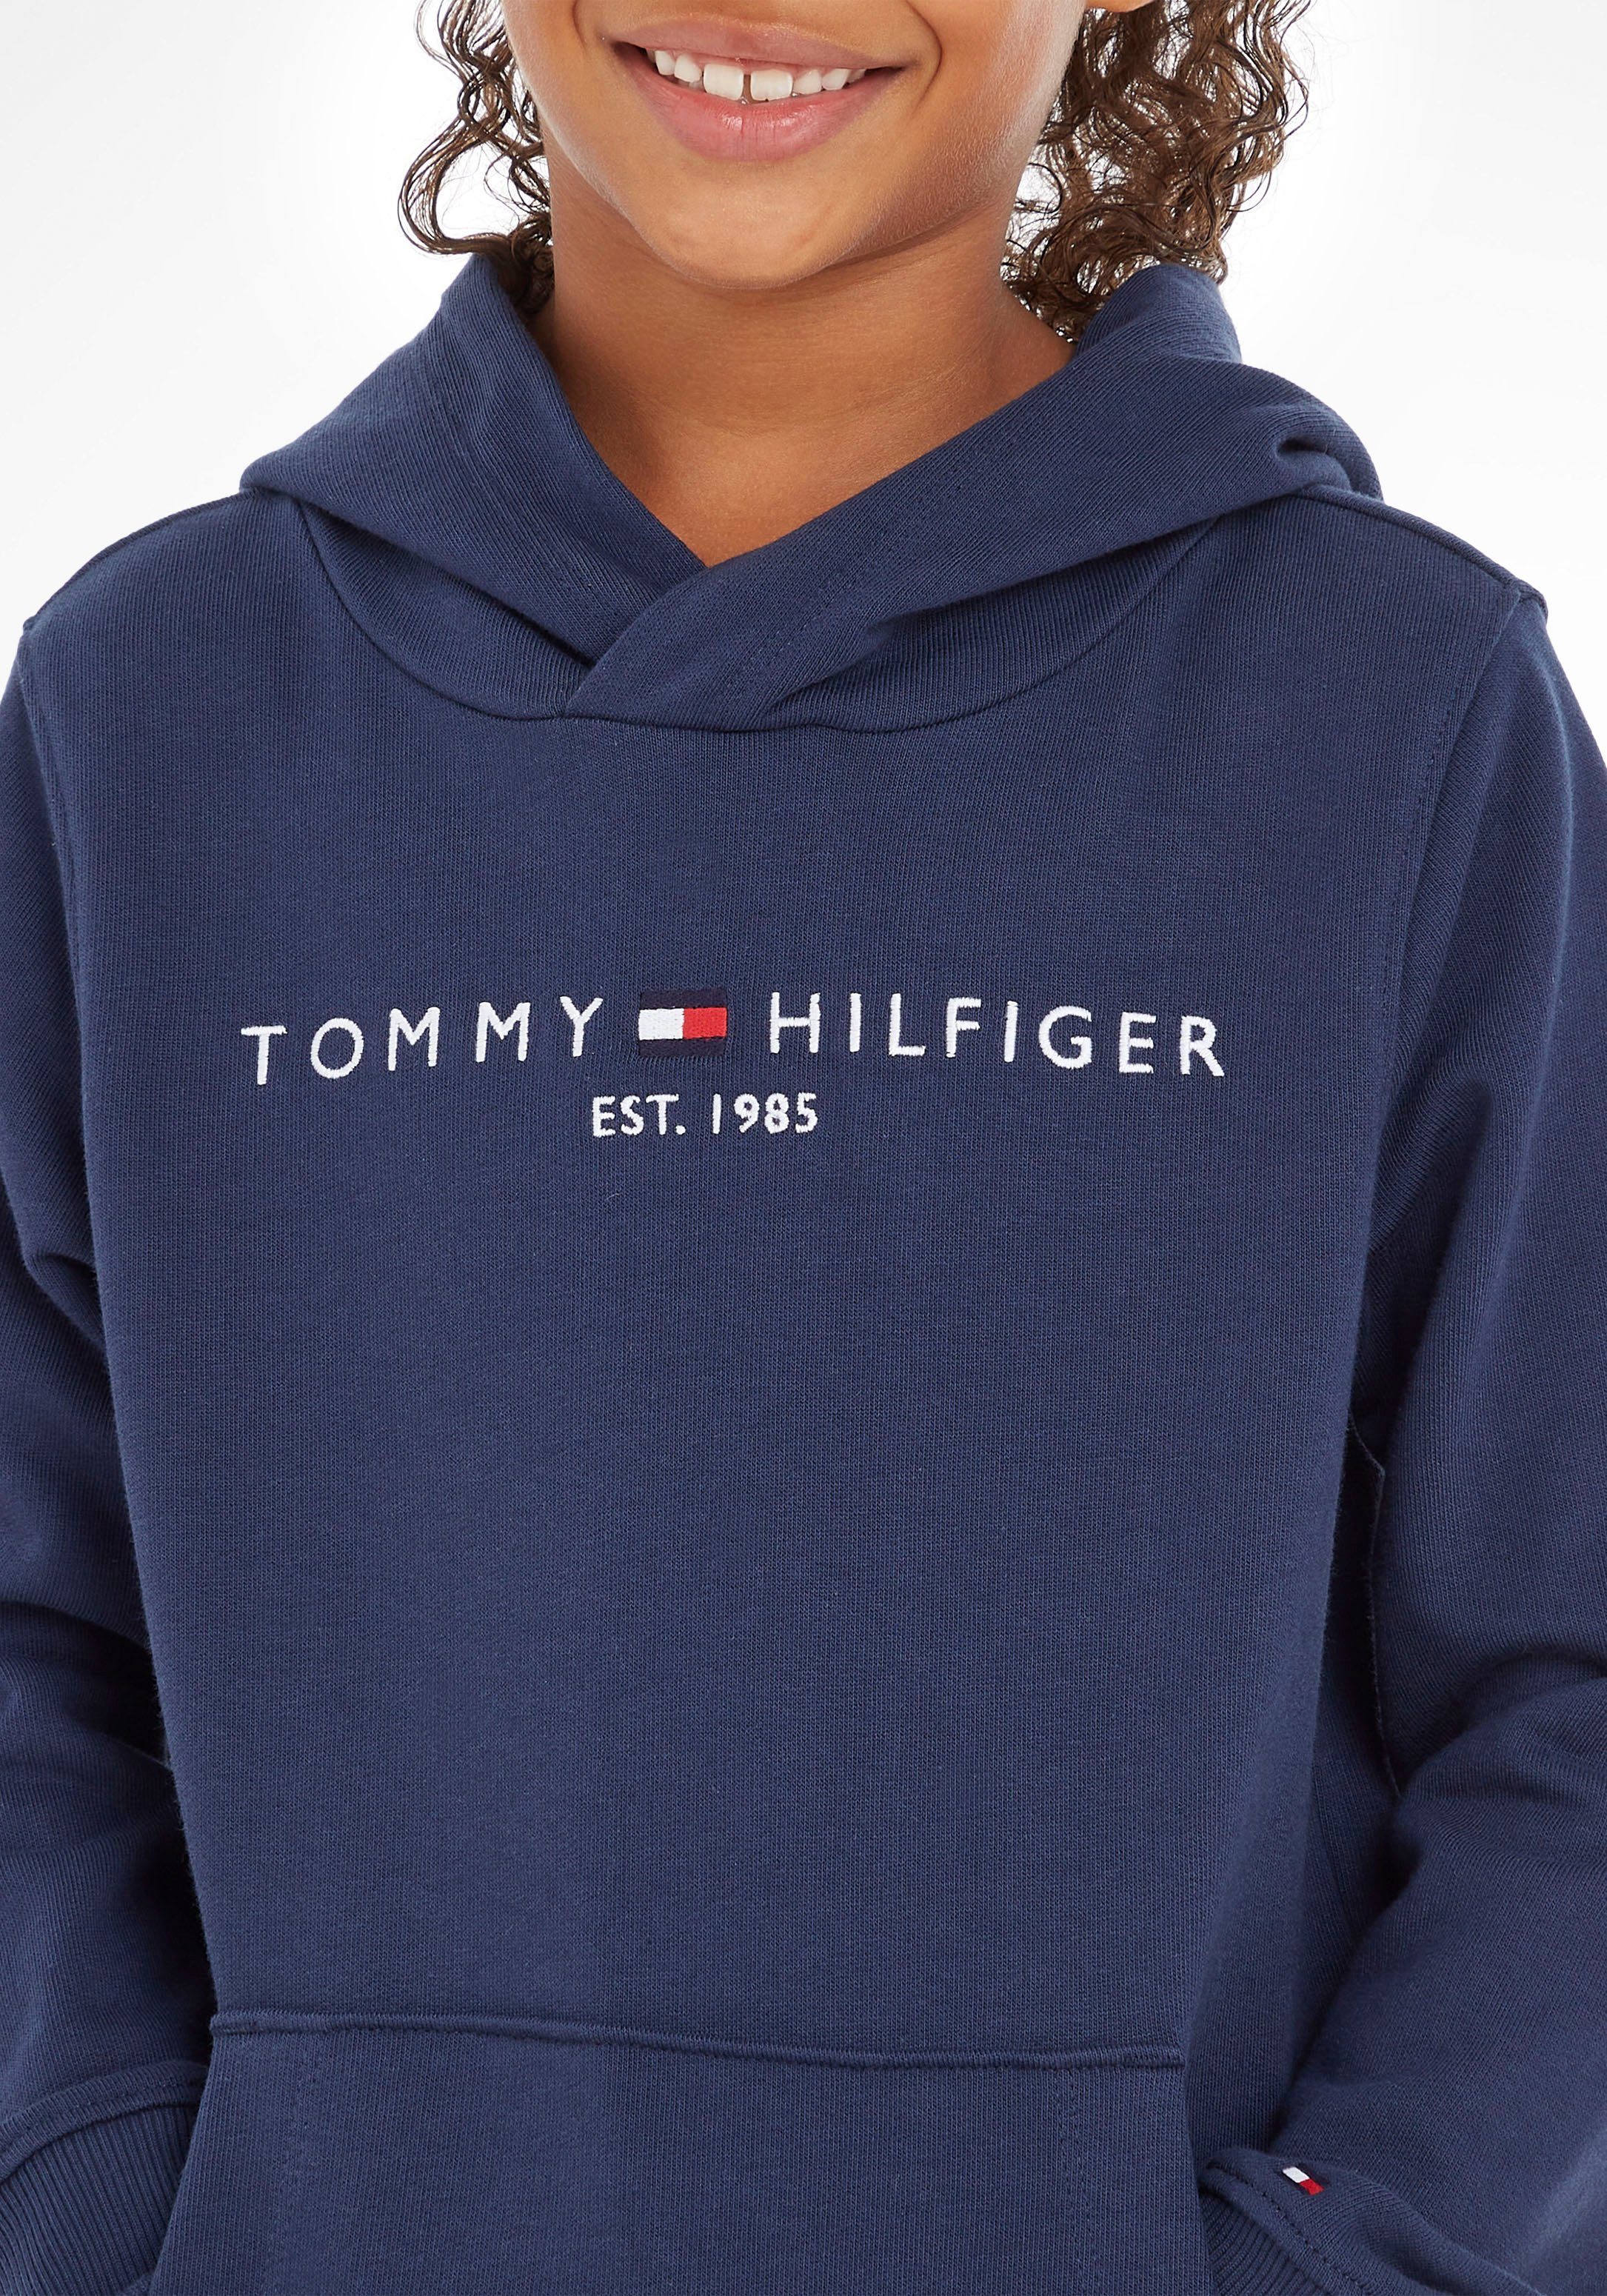 ESSENTIAL Hilfiger Tommy für Mädchen und Jungen HOODIE Kapuzensweatshirt